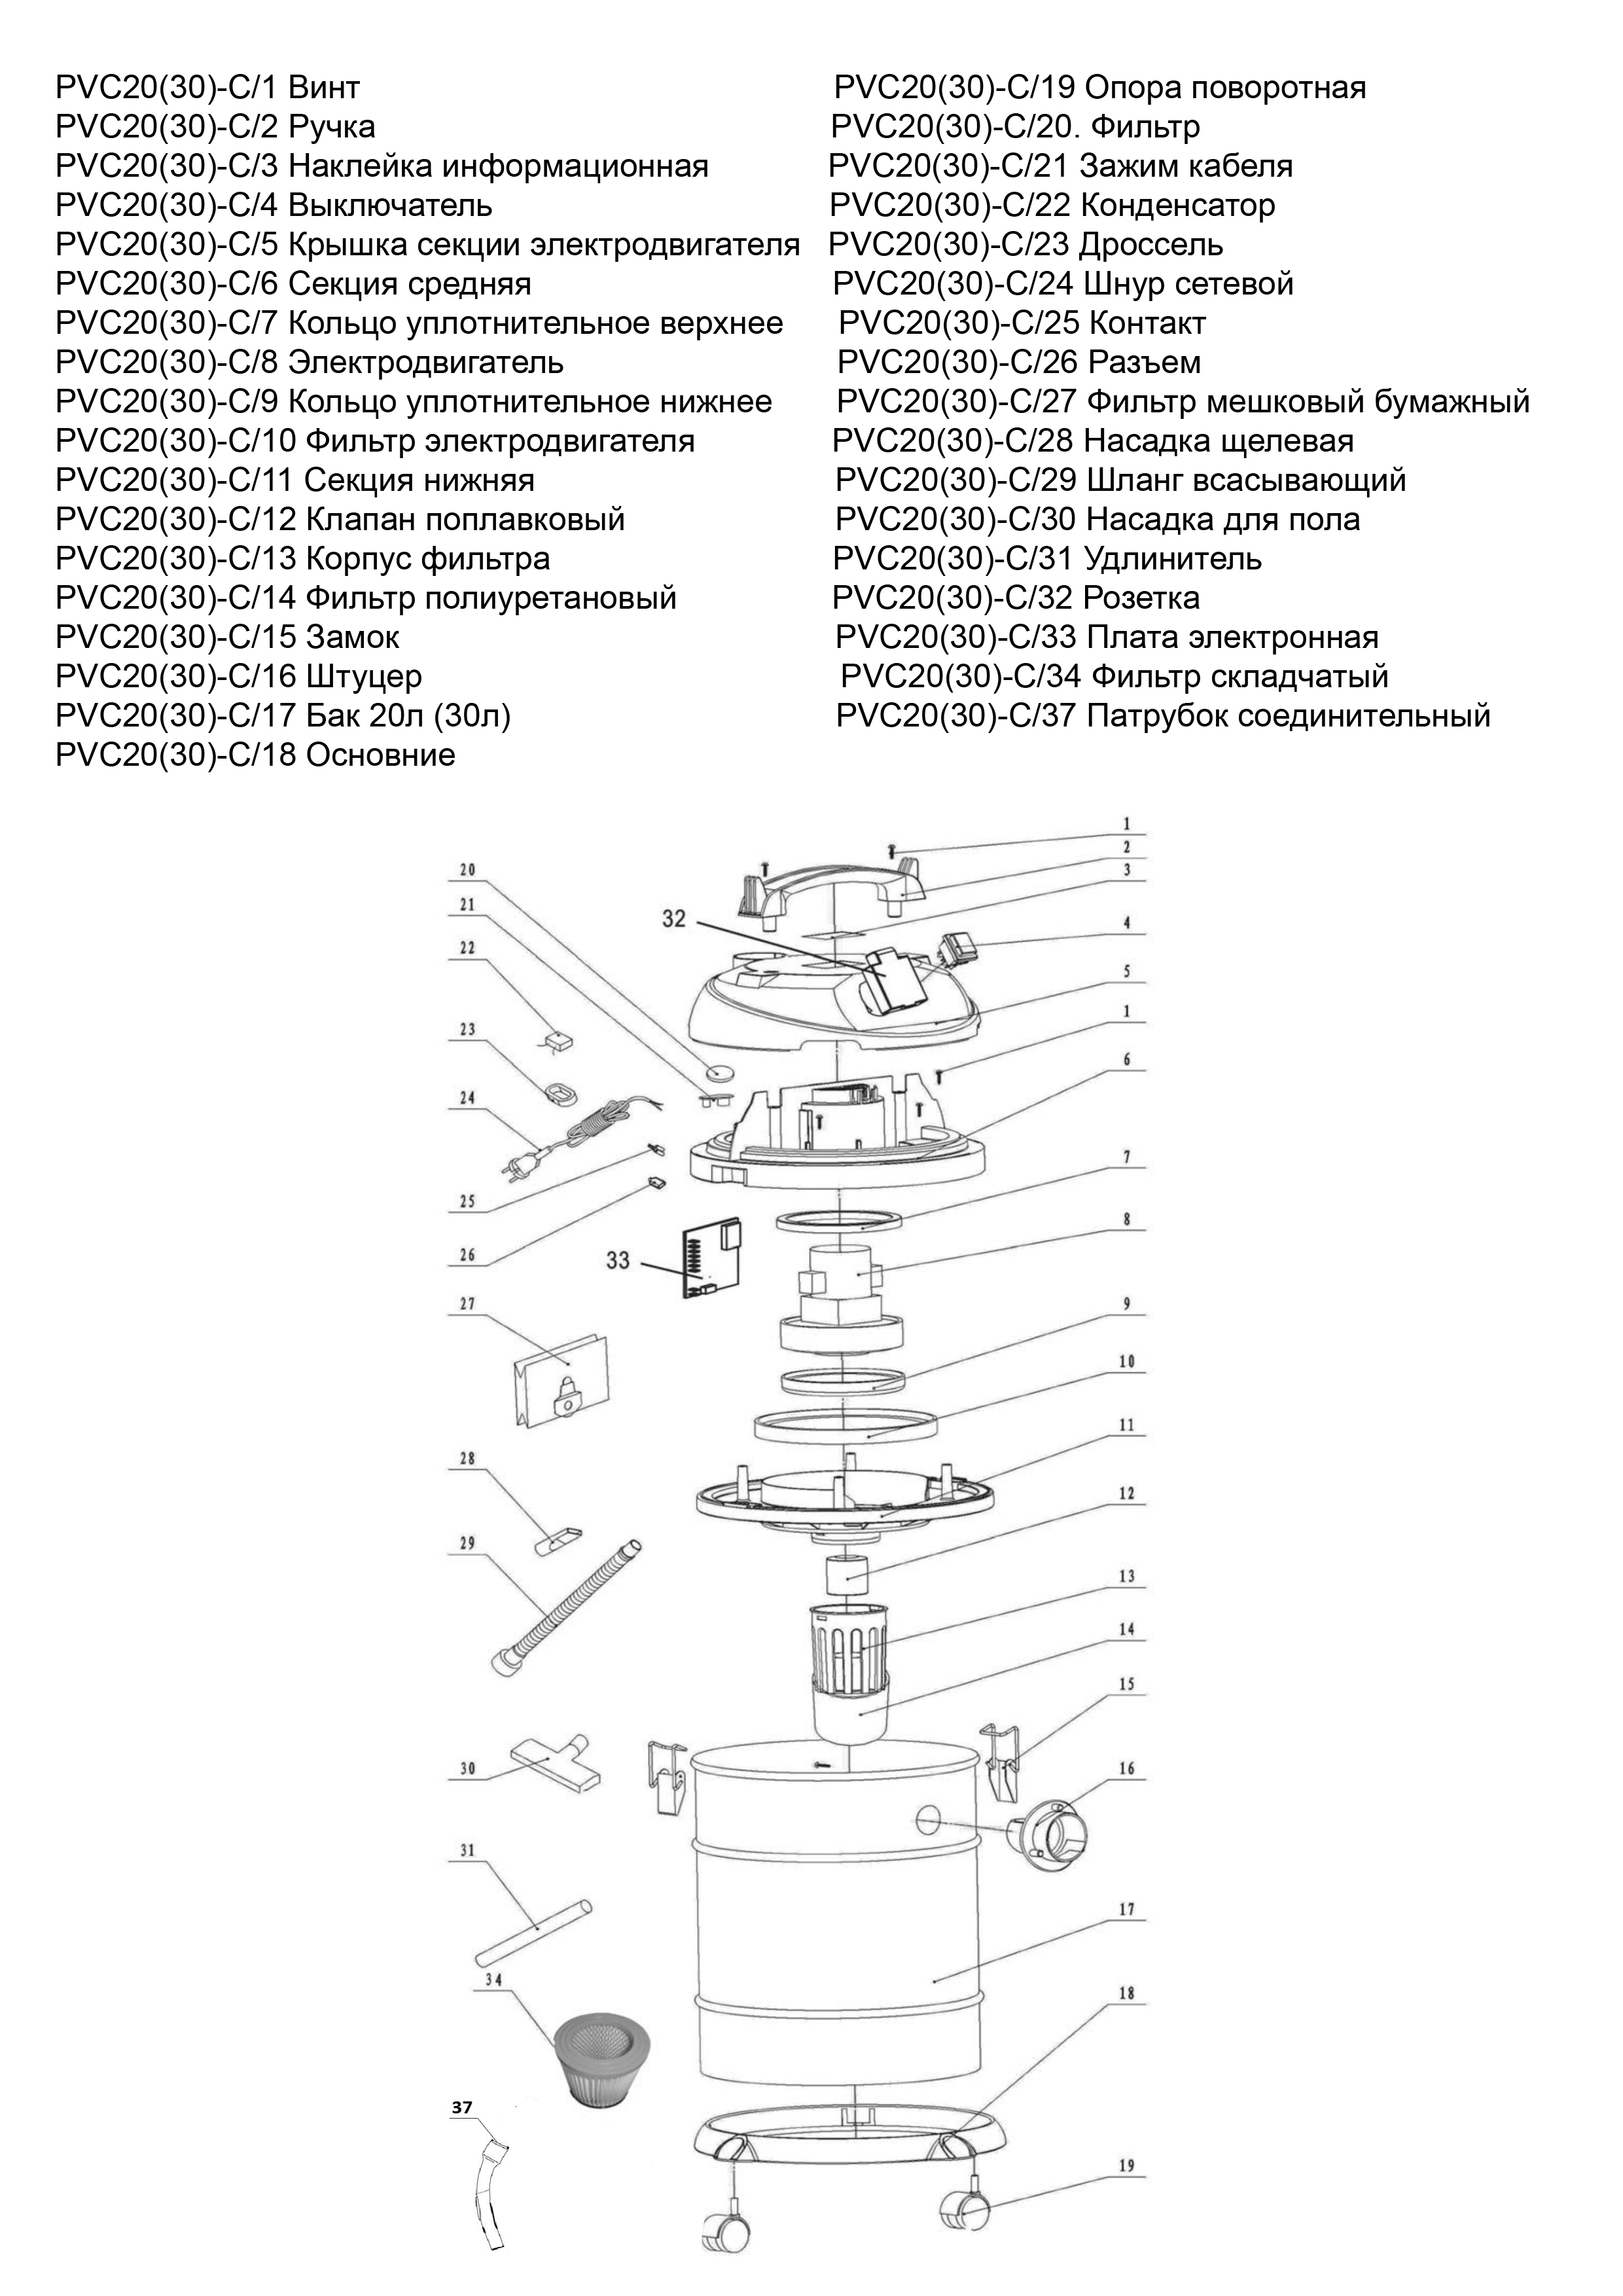 Запчасти, схема и деталировка P.I.T. PVC 20-C МАСТЕР